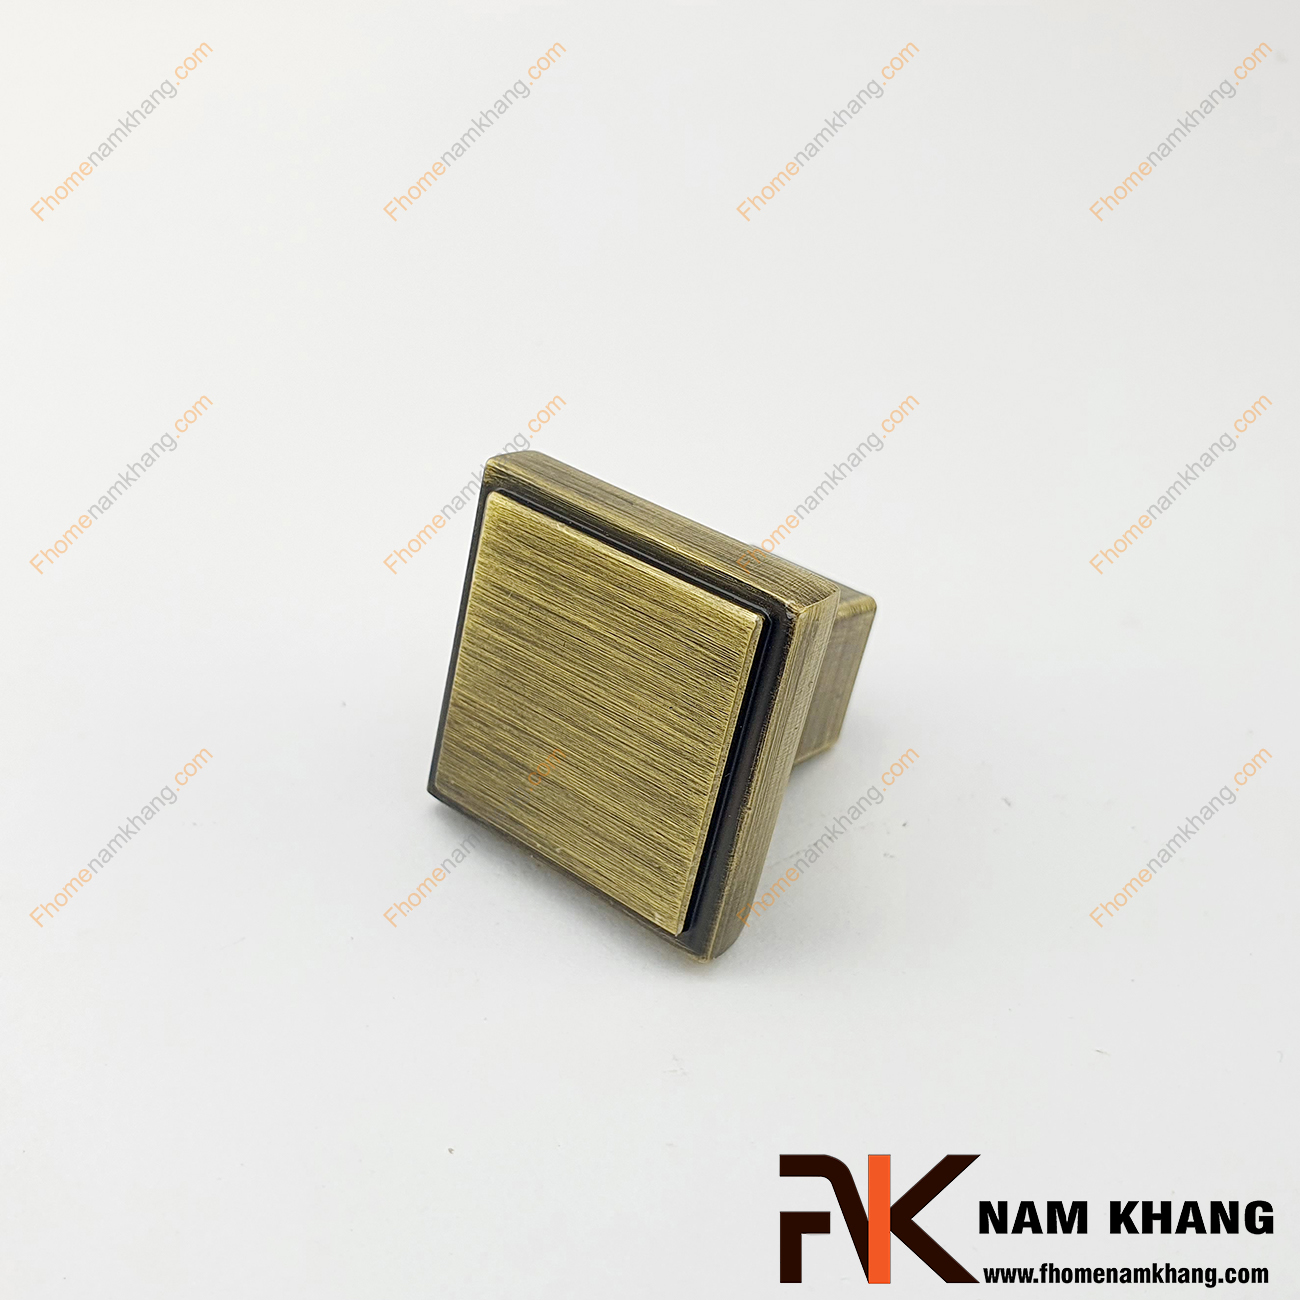 Tay nắm tủ vuông mạ đồng rêu NK026-R được thiết kế tinh tế dạng khối vuông từ hợp kim và được mạ màu rêu đặc trưng để tạo nên vẻ đẹp đặc trưng của một sản phẩm nội thất.